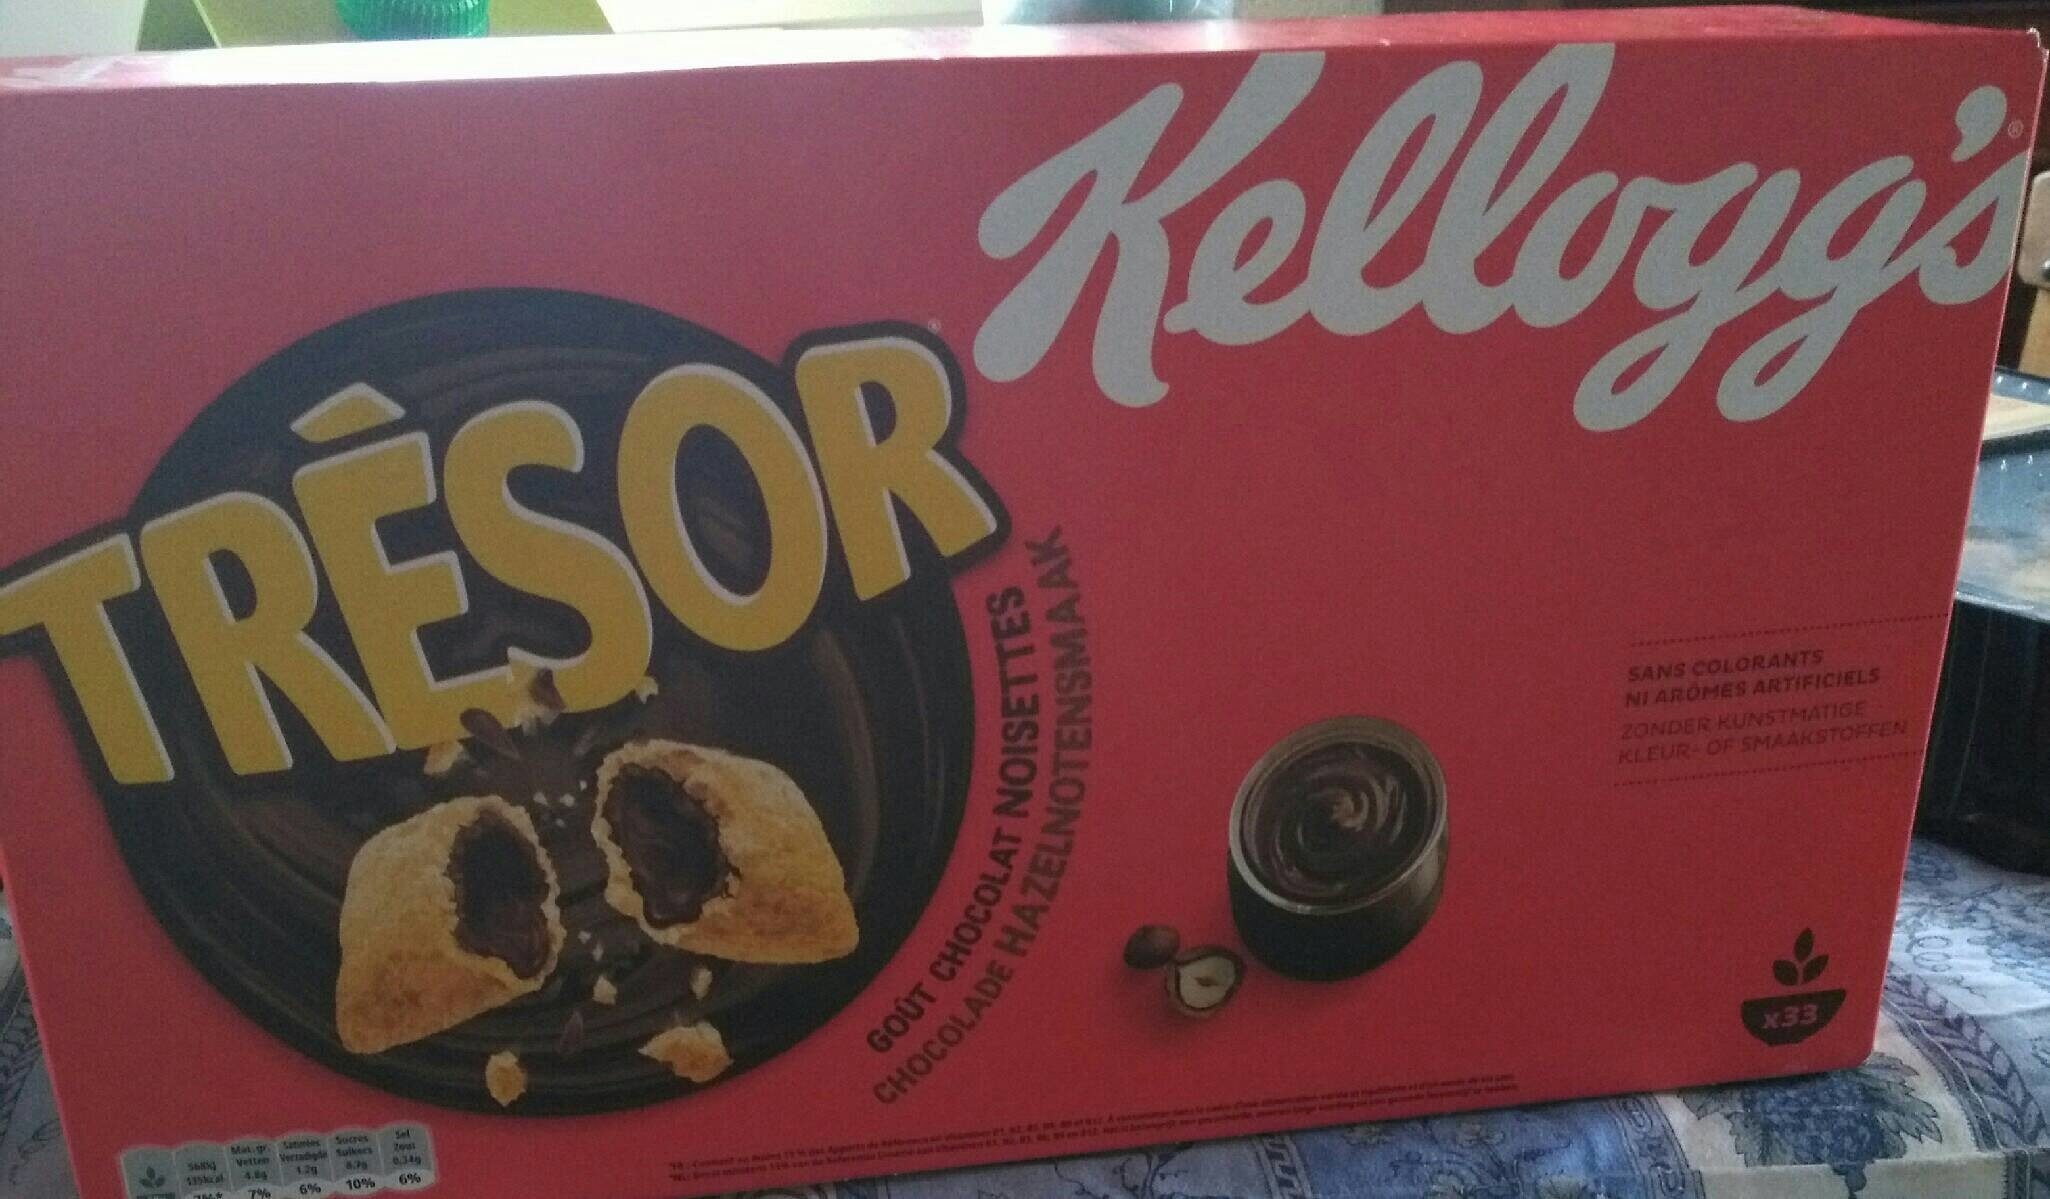 Kelloggs Trésor goût chocolat noisettes - Product - fr